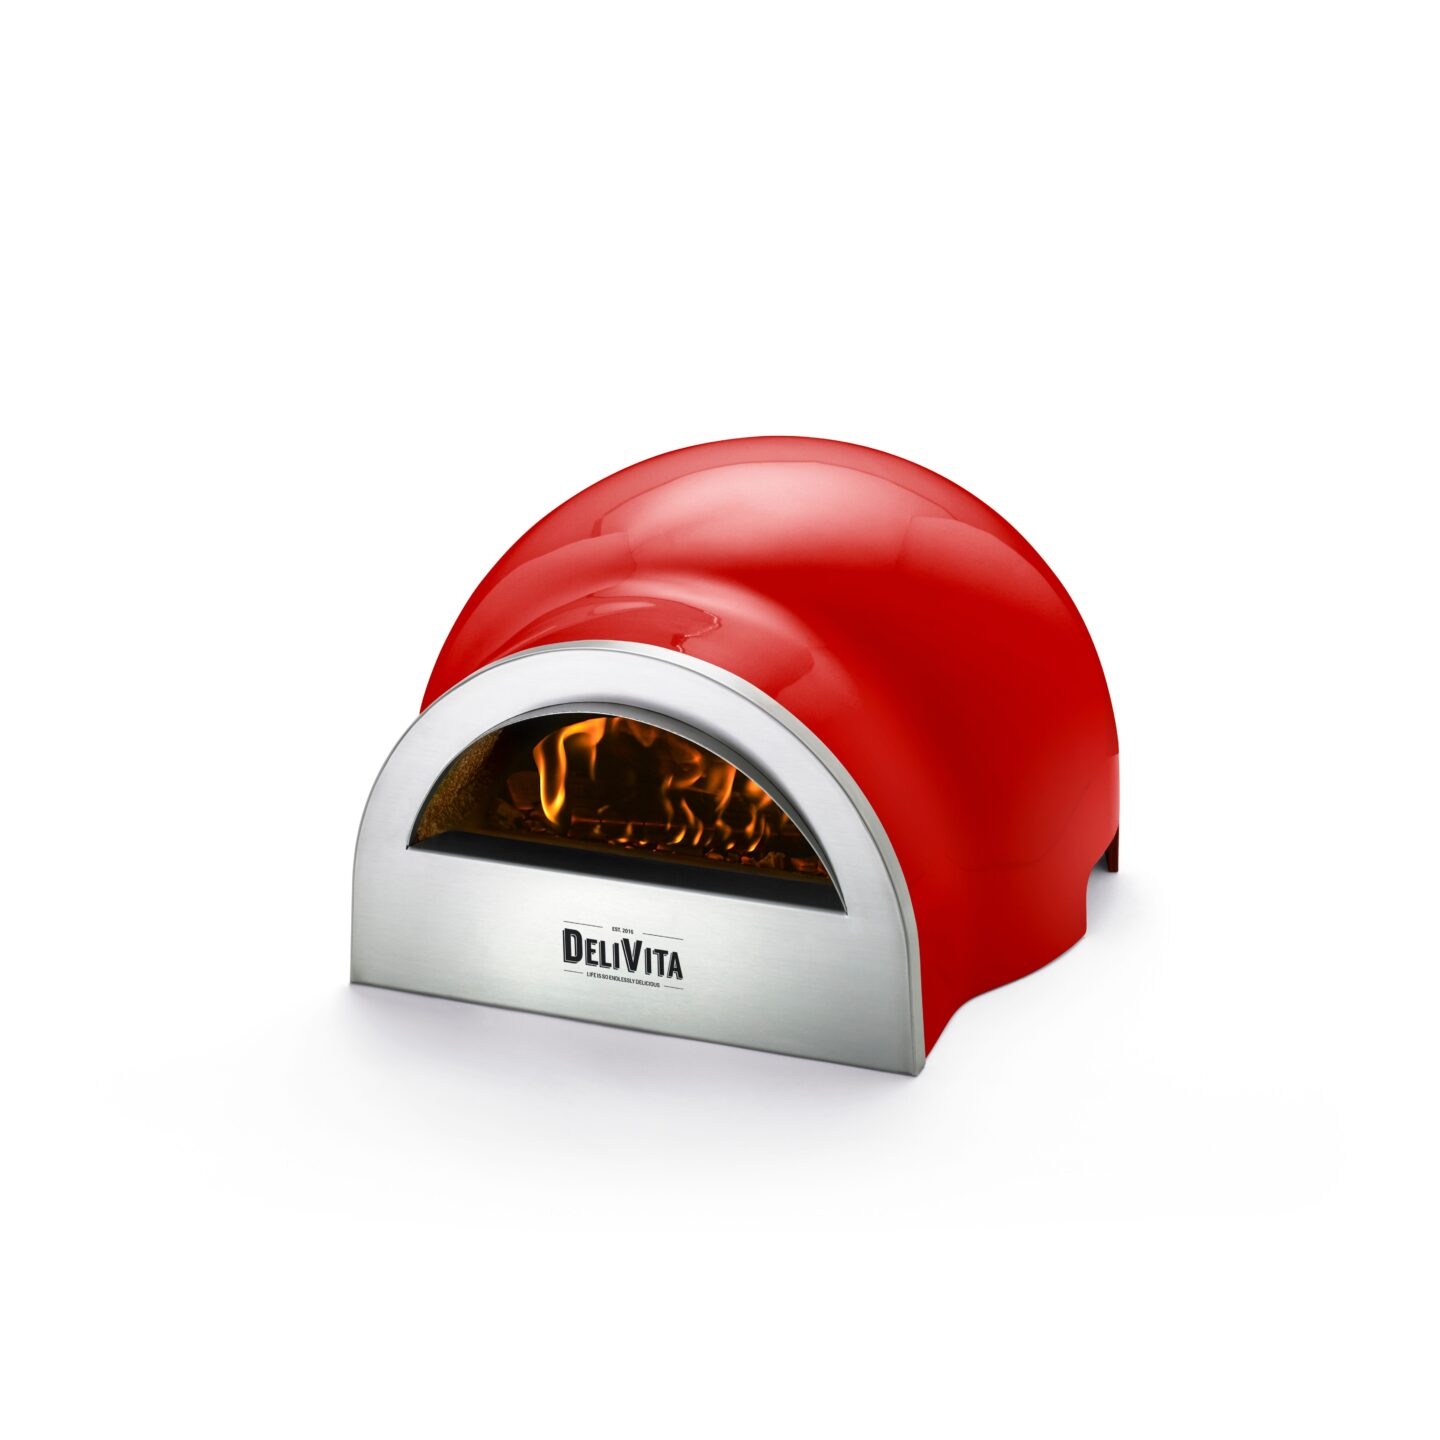 Delivita Pizza Oven – The Chilli Red Oven – Bright and Shine